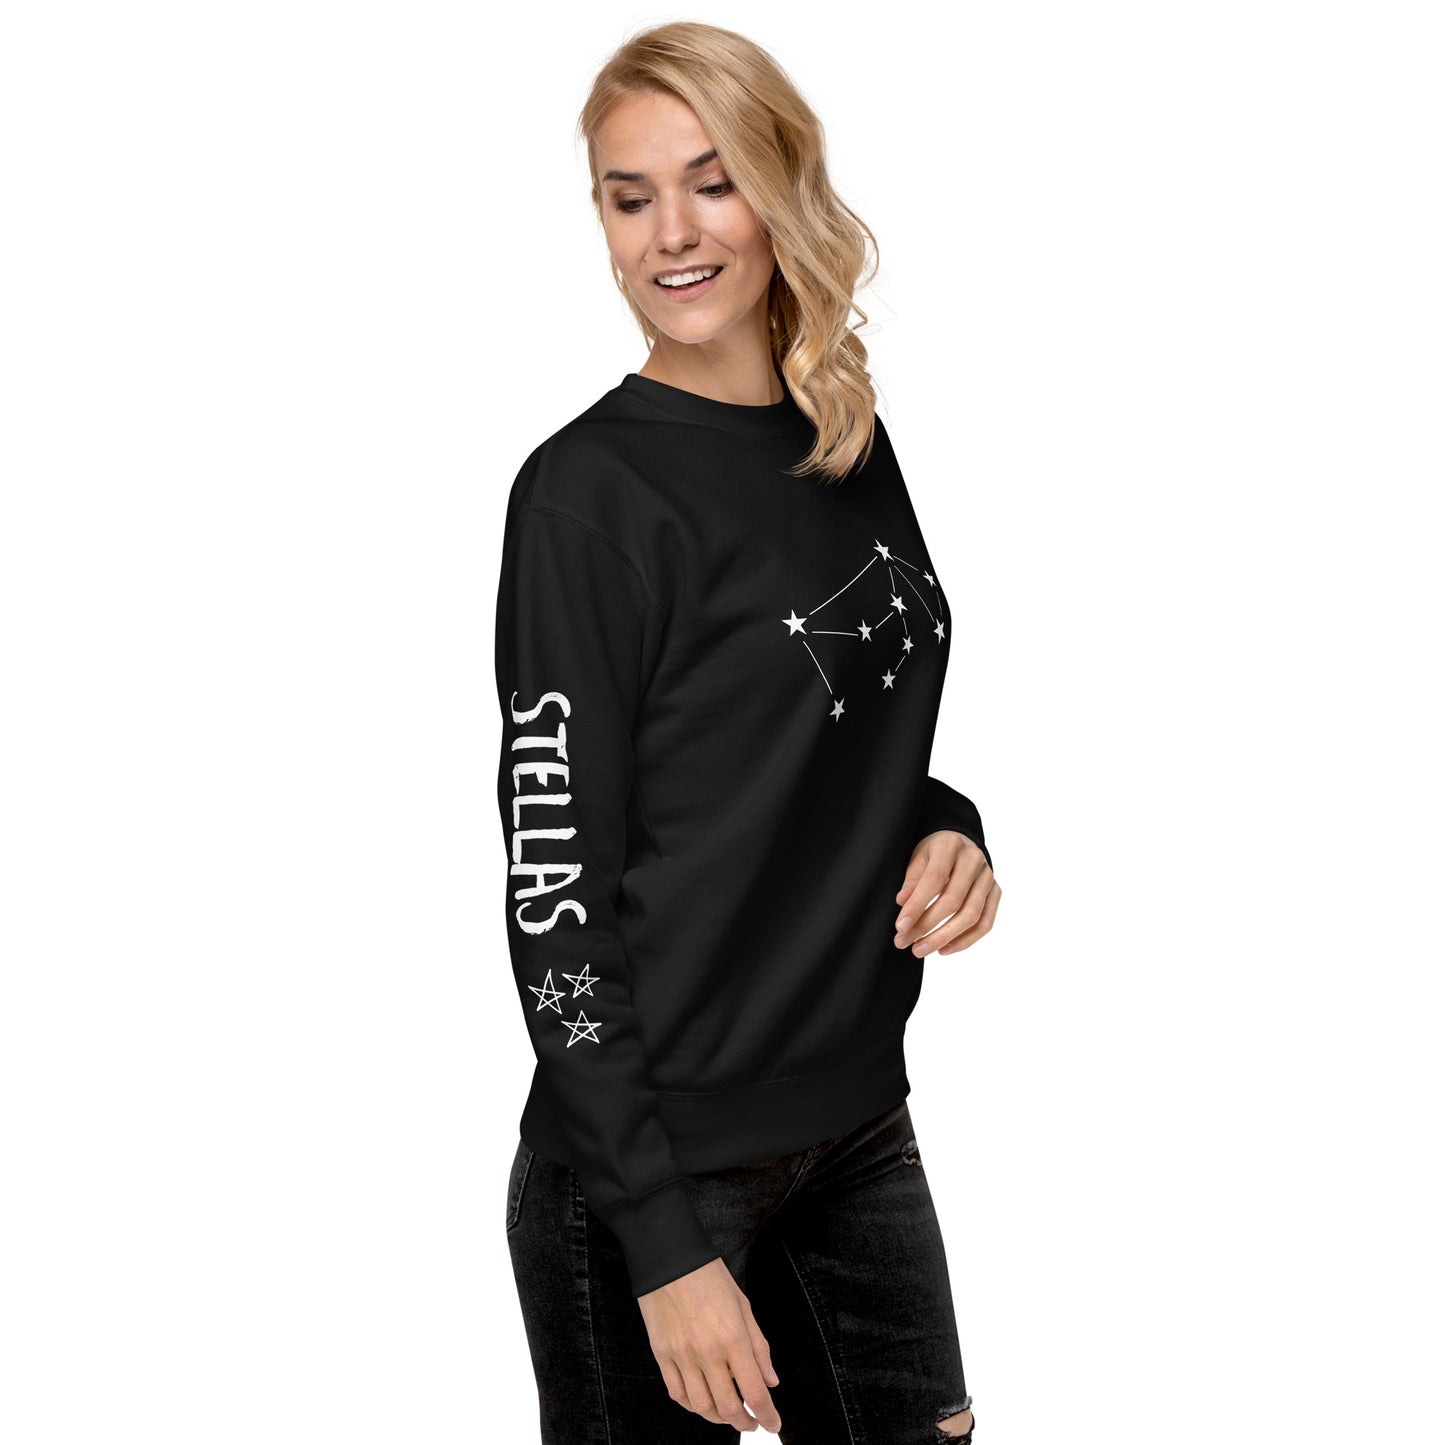 Lunam Et Stellas Unisex Premium Sweatshirt